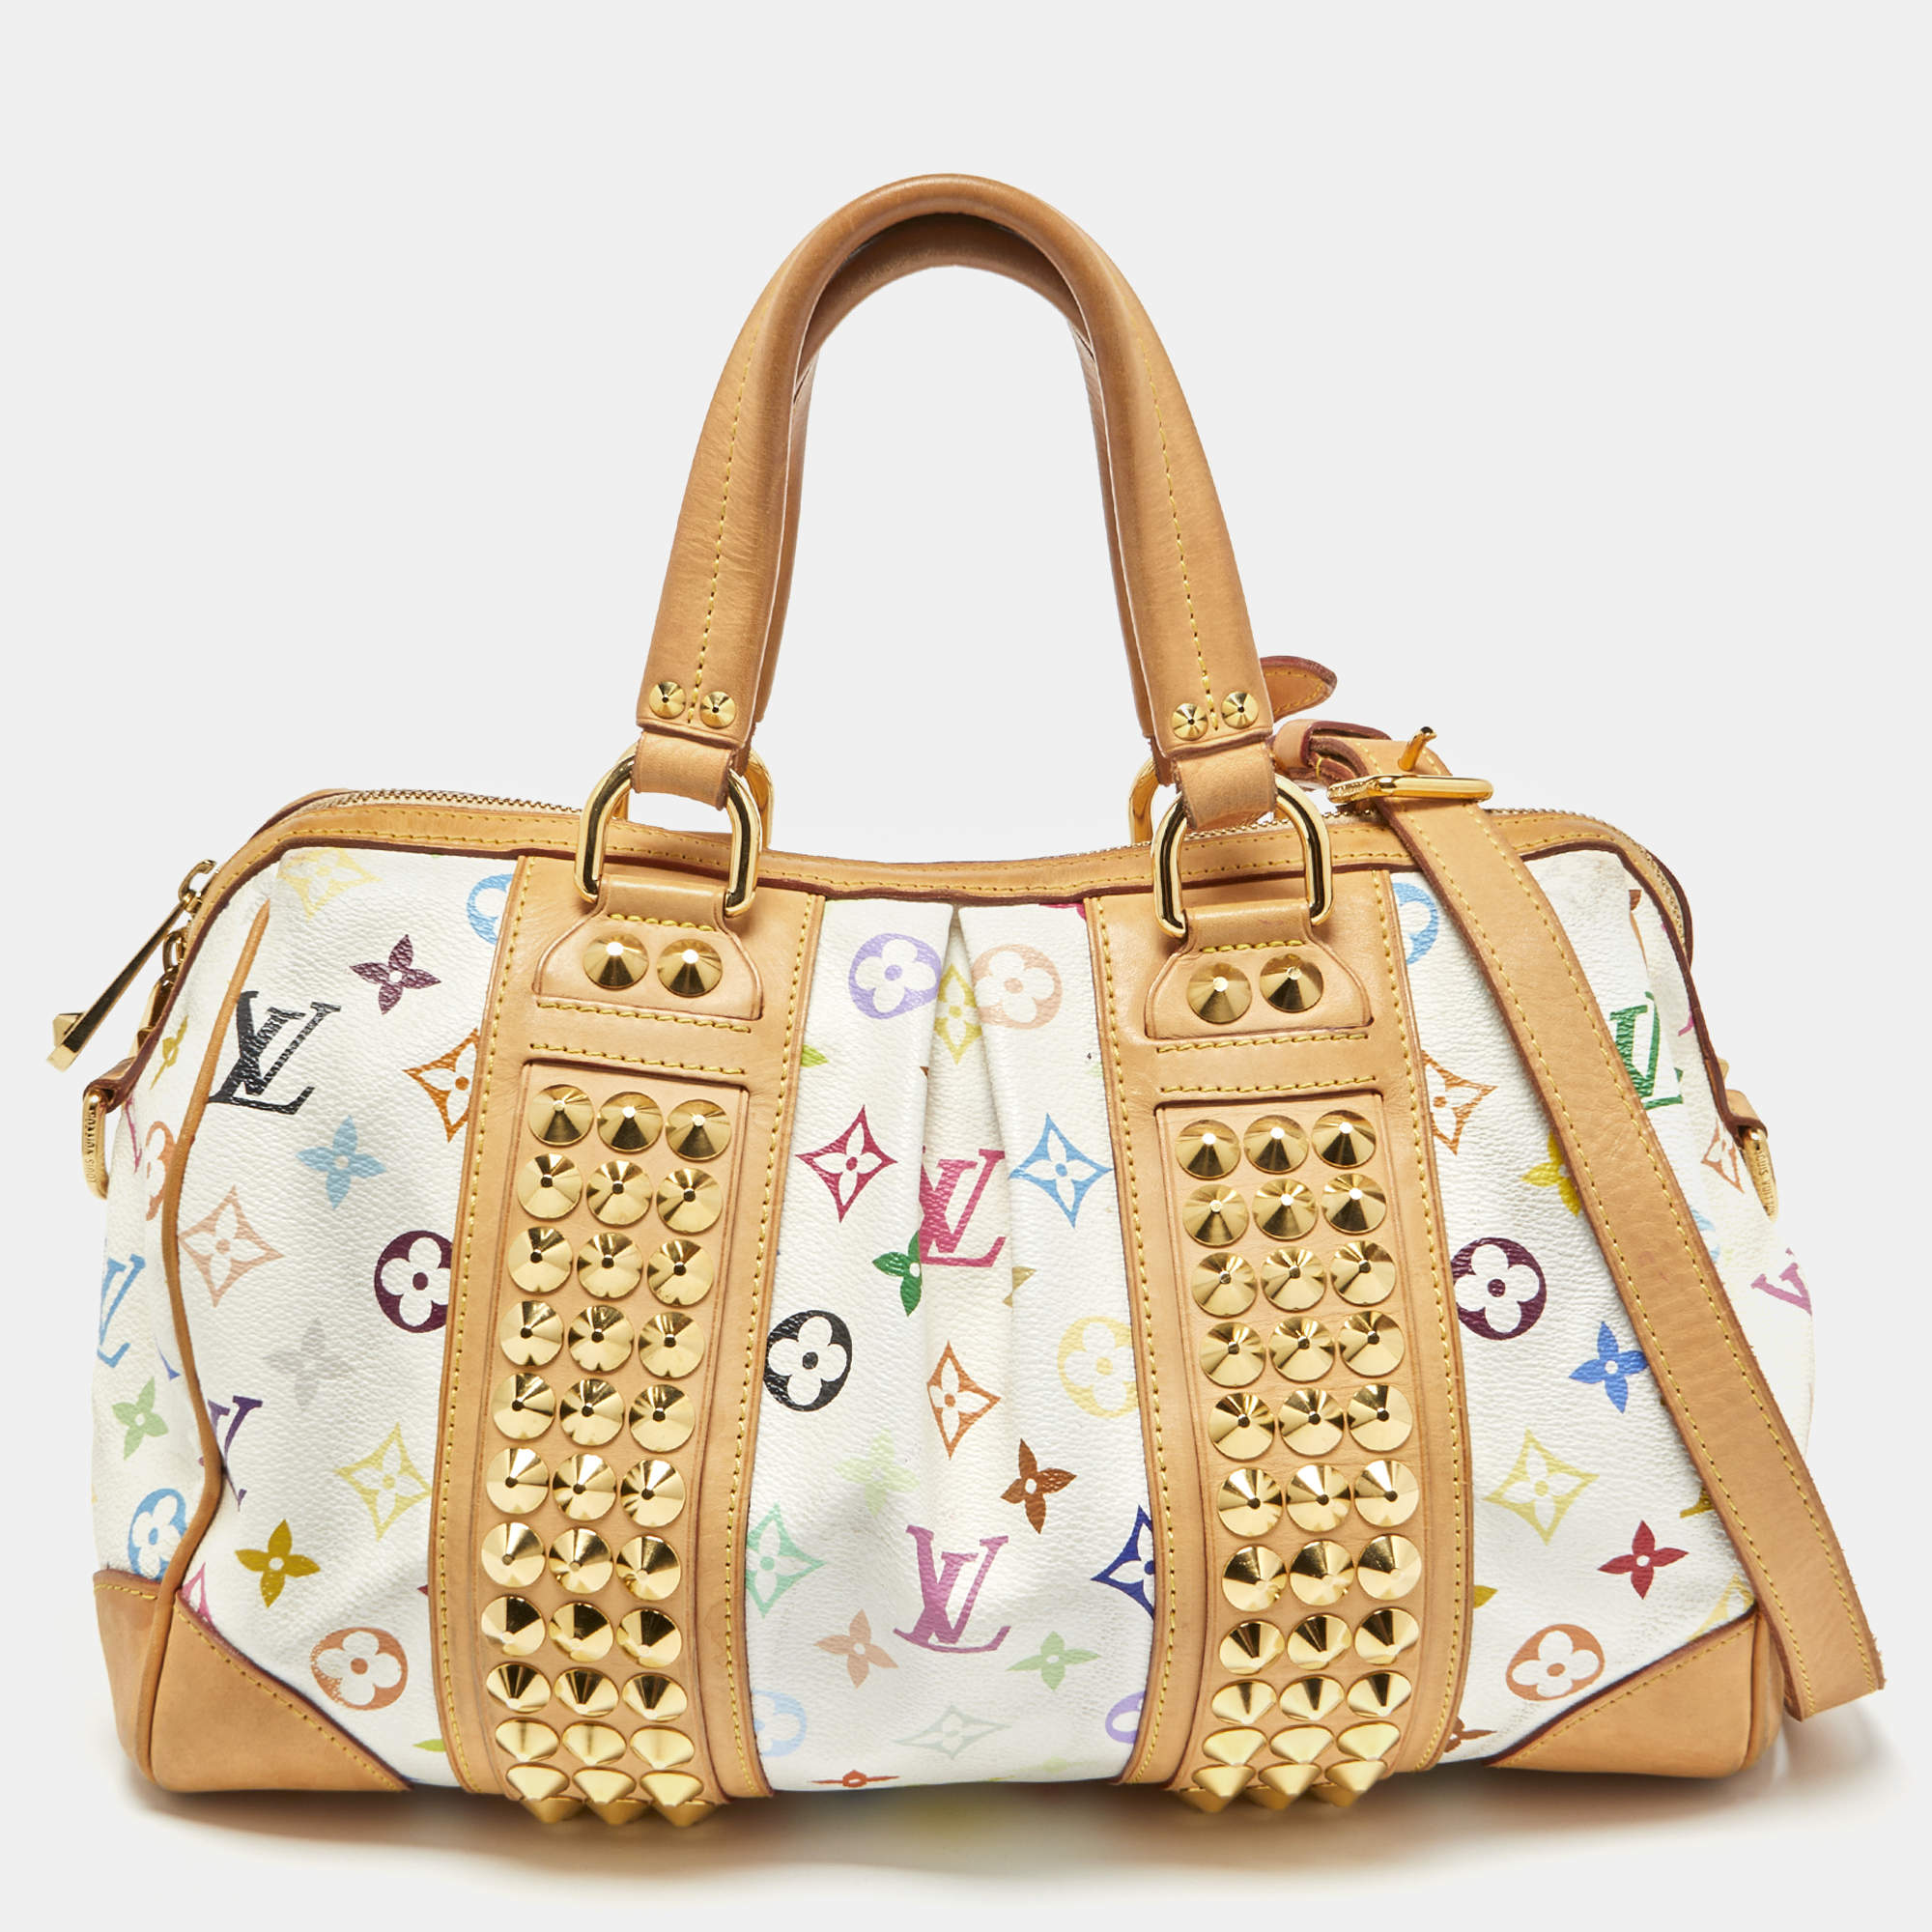 Louis Vuitton Courtney Handbag in Multicolor Monogram Canvas and